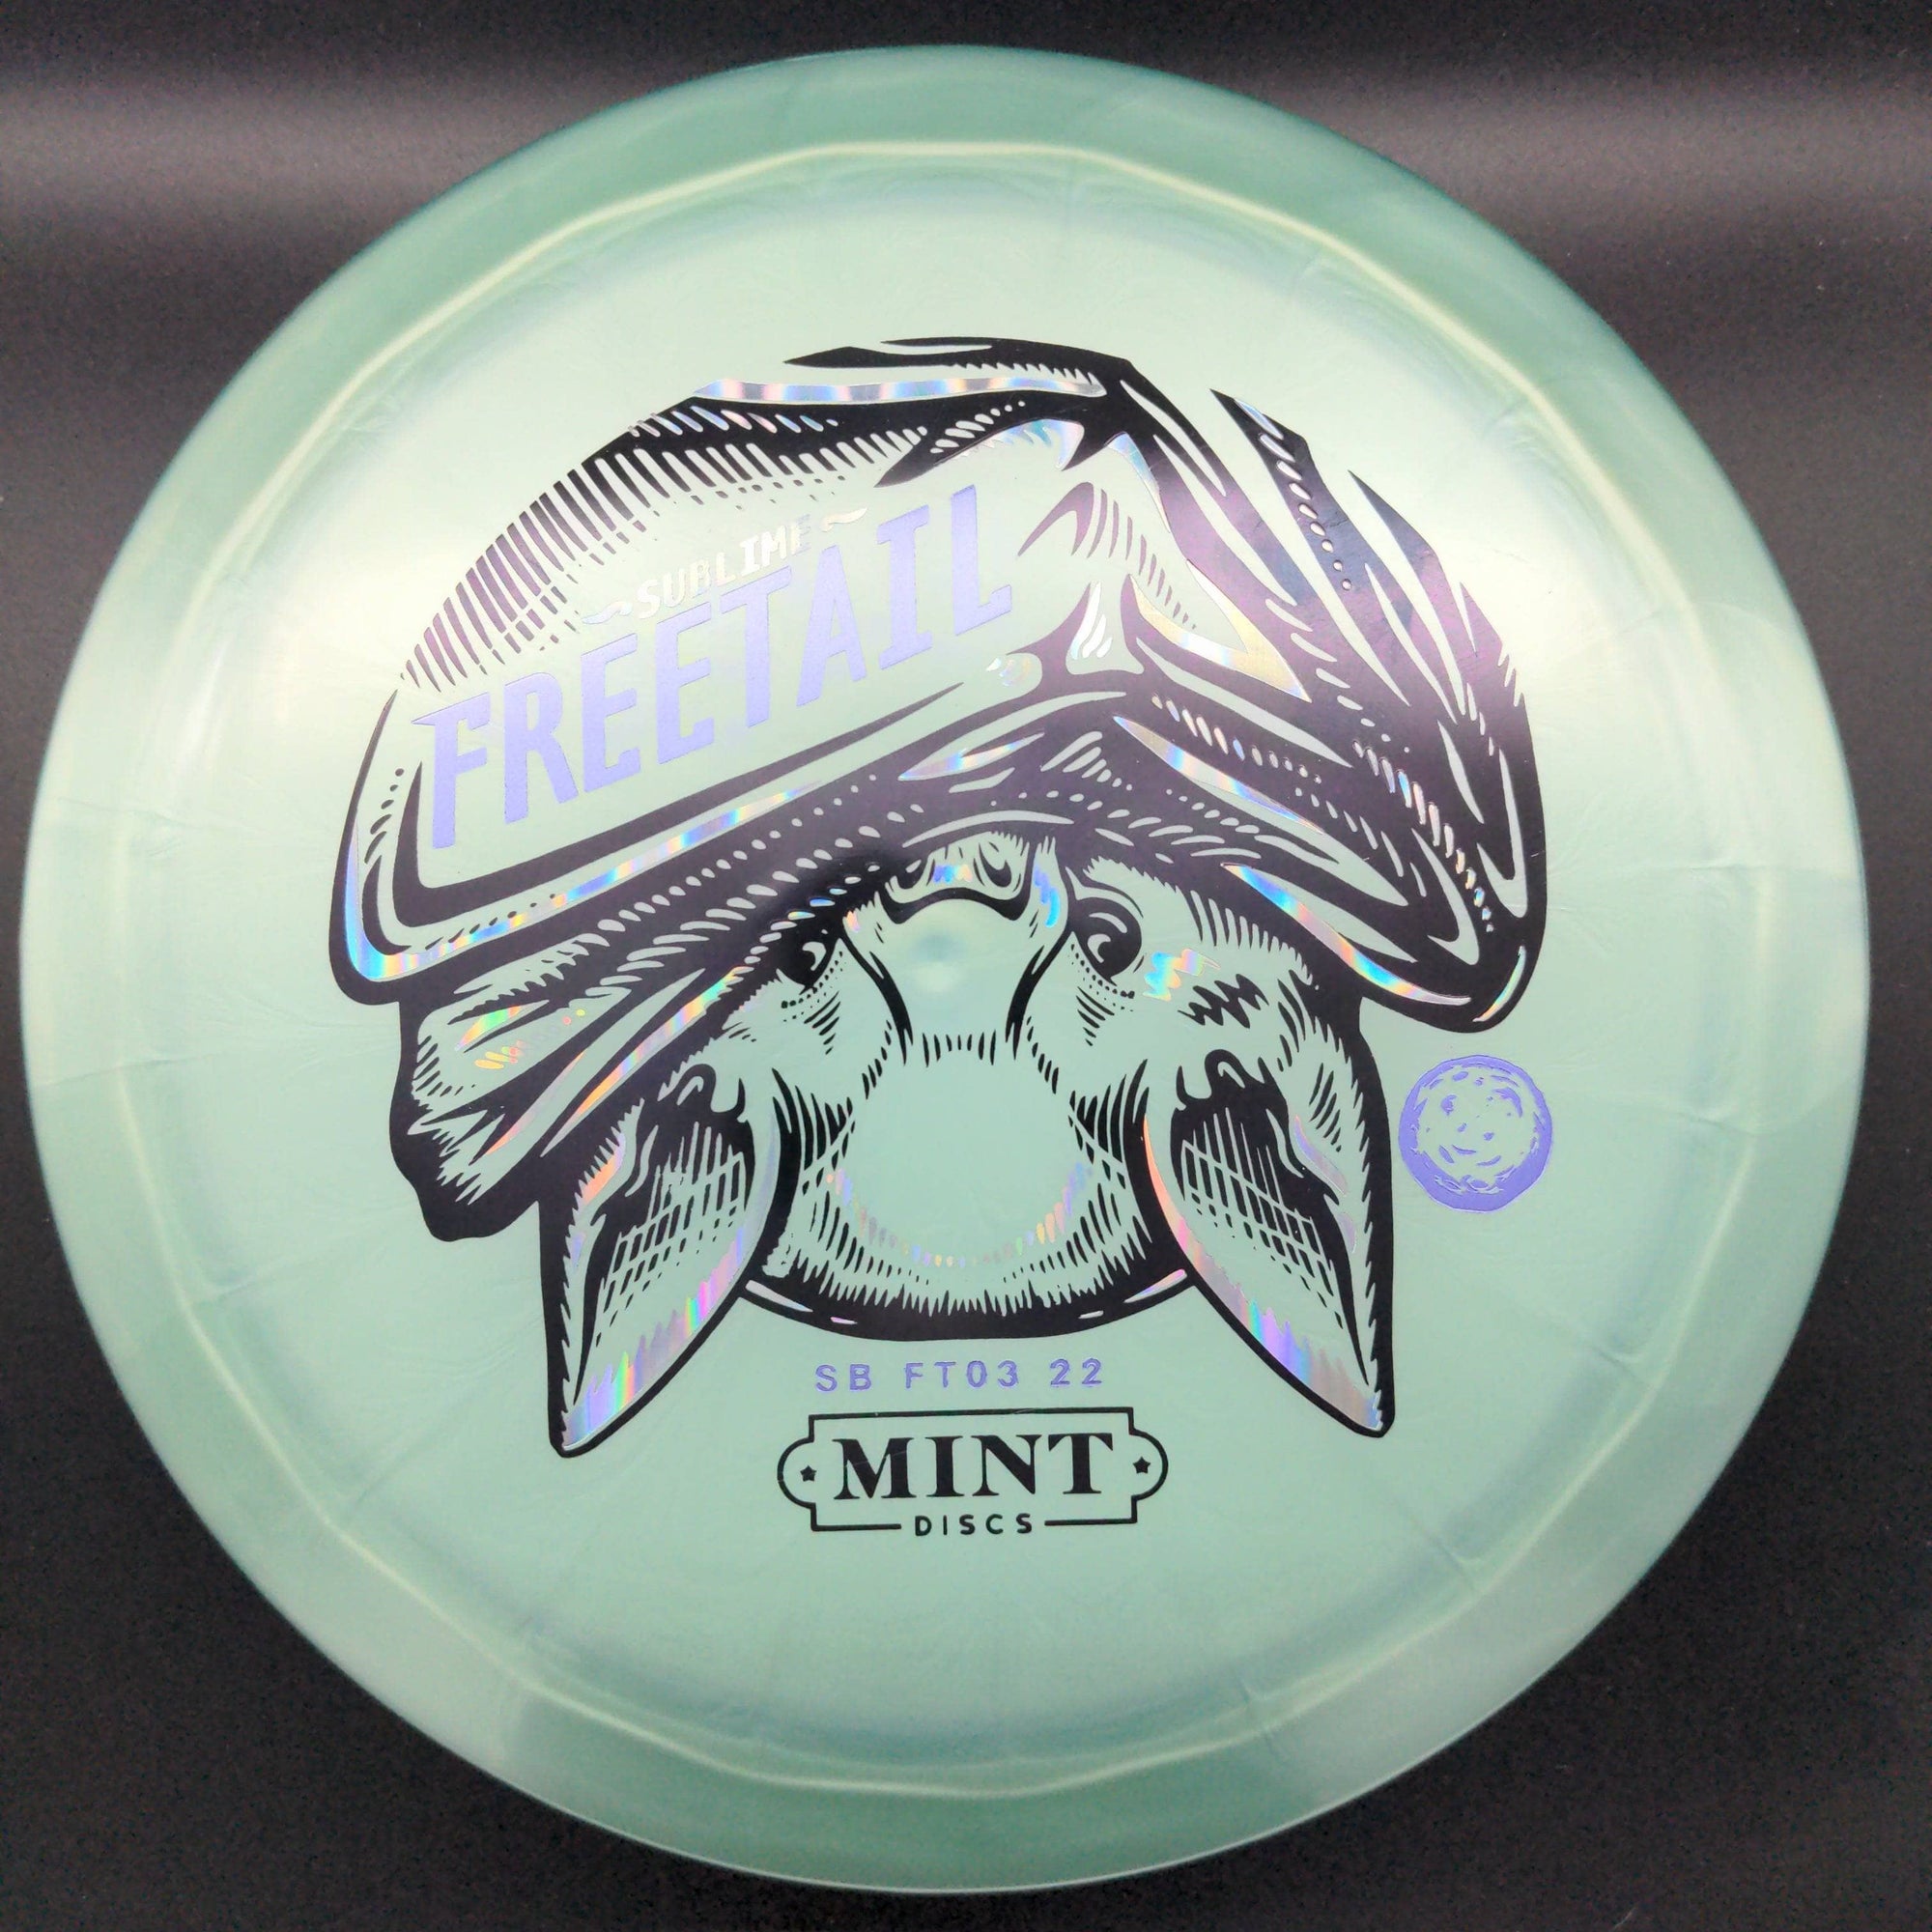 Mint Discs Fairway Driver Freetail, Sublime Plastic